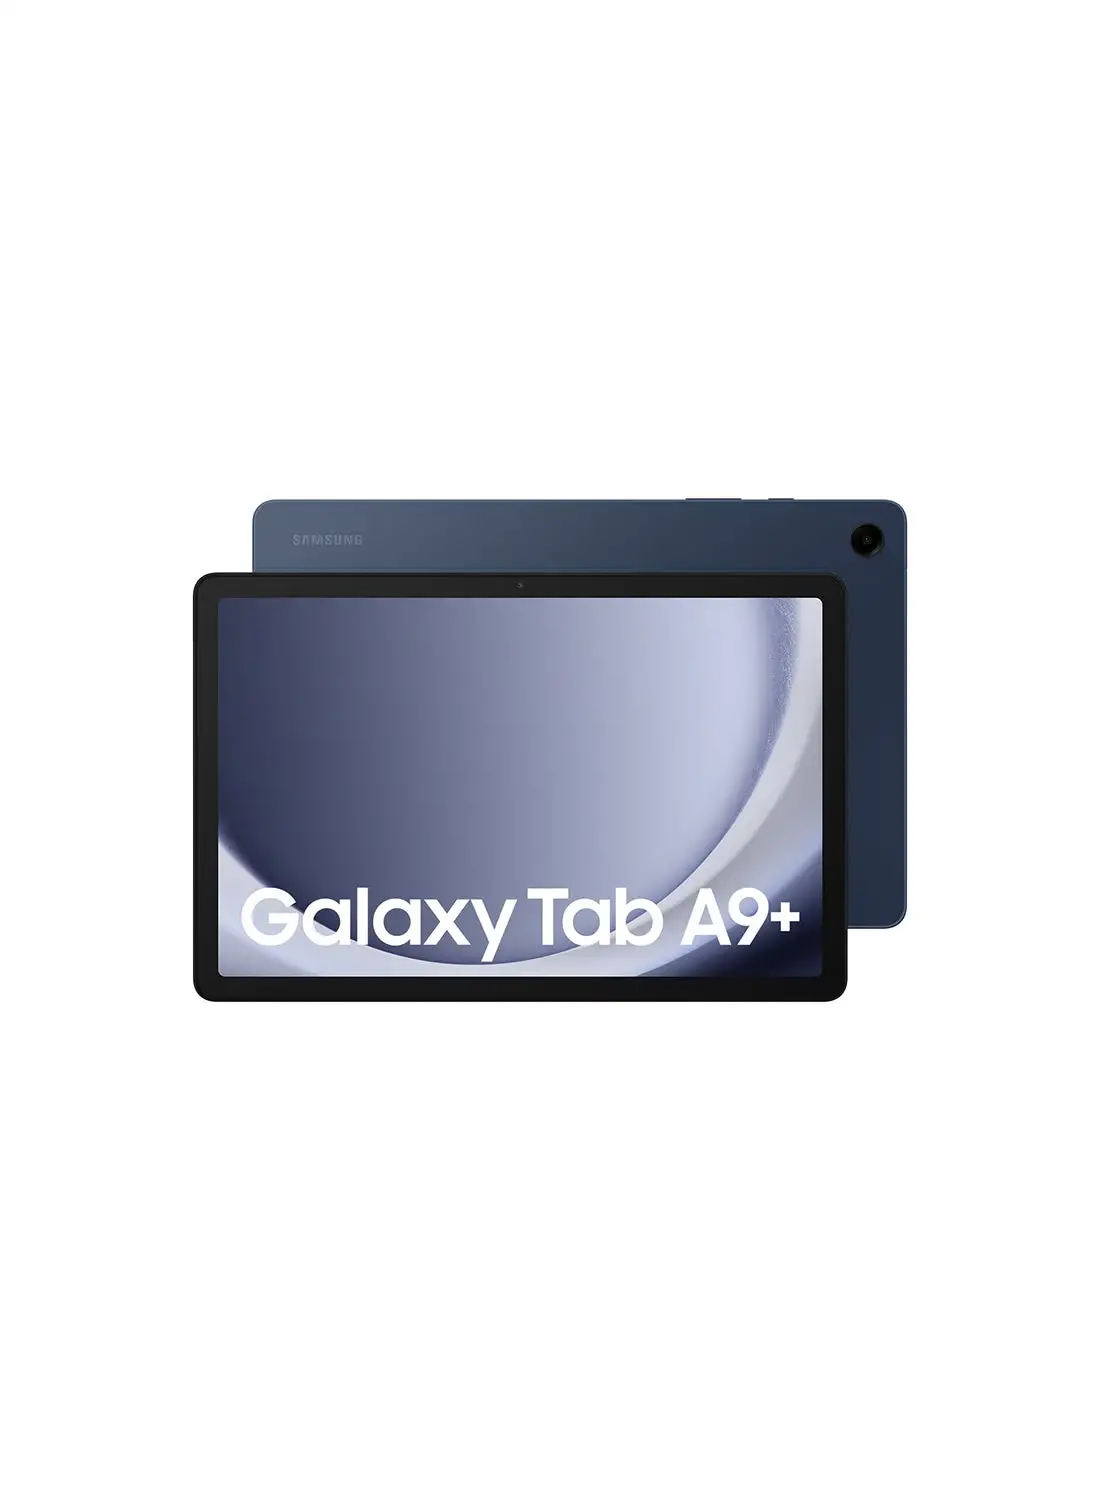 Samsung Galaxy Tab A9 Plus Navy 8GB RAM 128GB 5G - Middle East Version